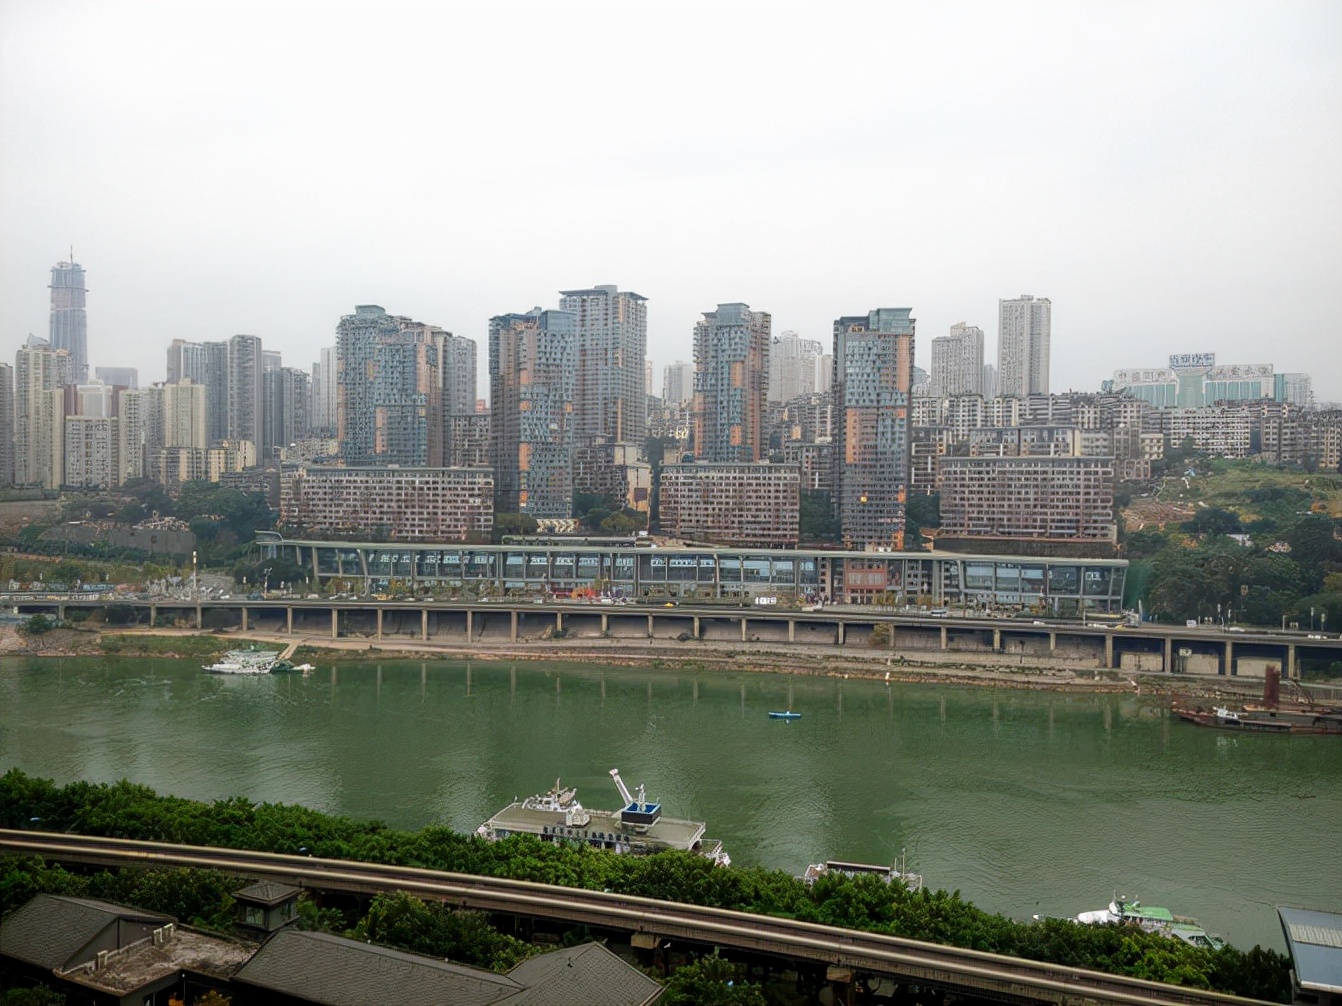 2021年土地出让金20强来袭！上海3142亿稳居第一，重庆排名第七